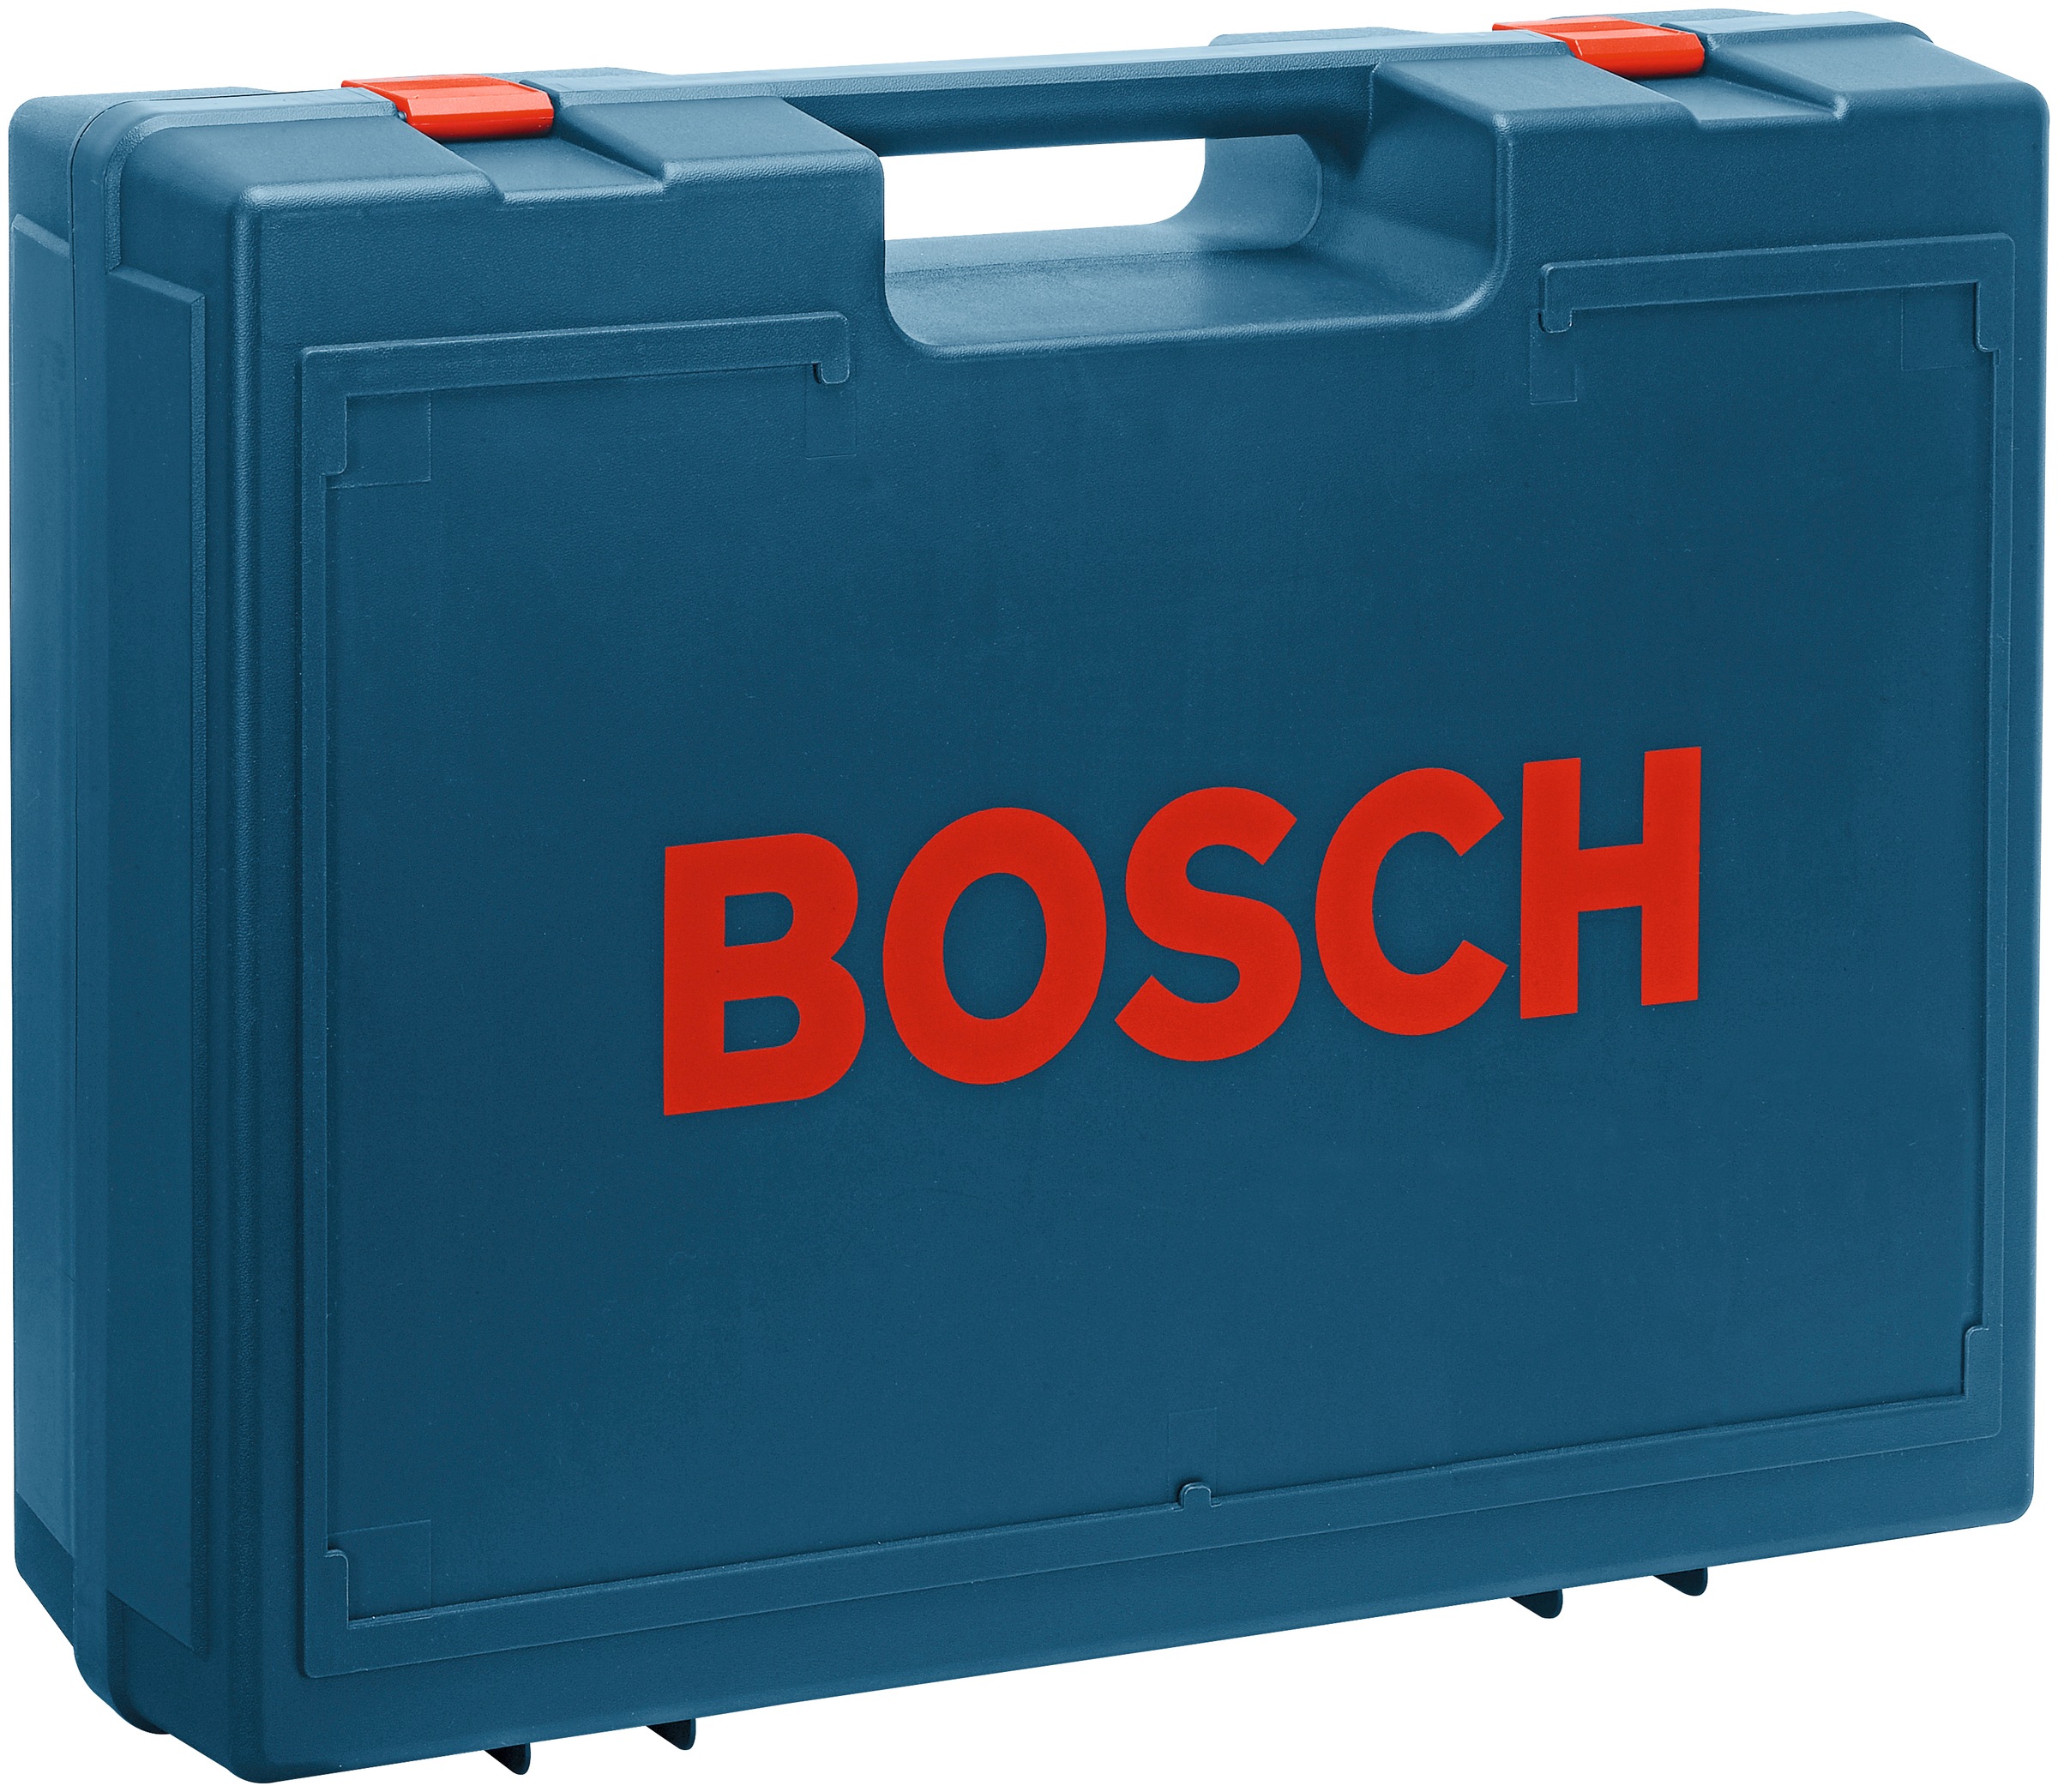 Bosch Professional Exzenterschleifer »GEX 125-1 AE«